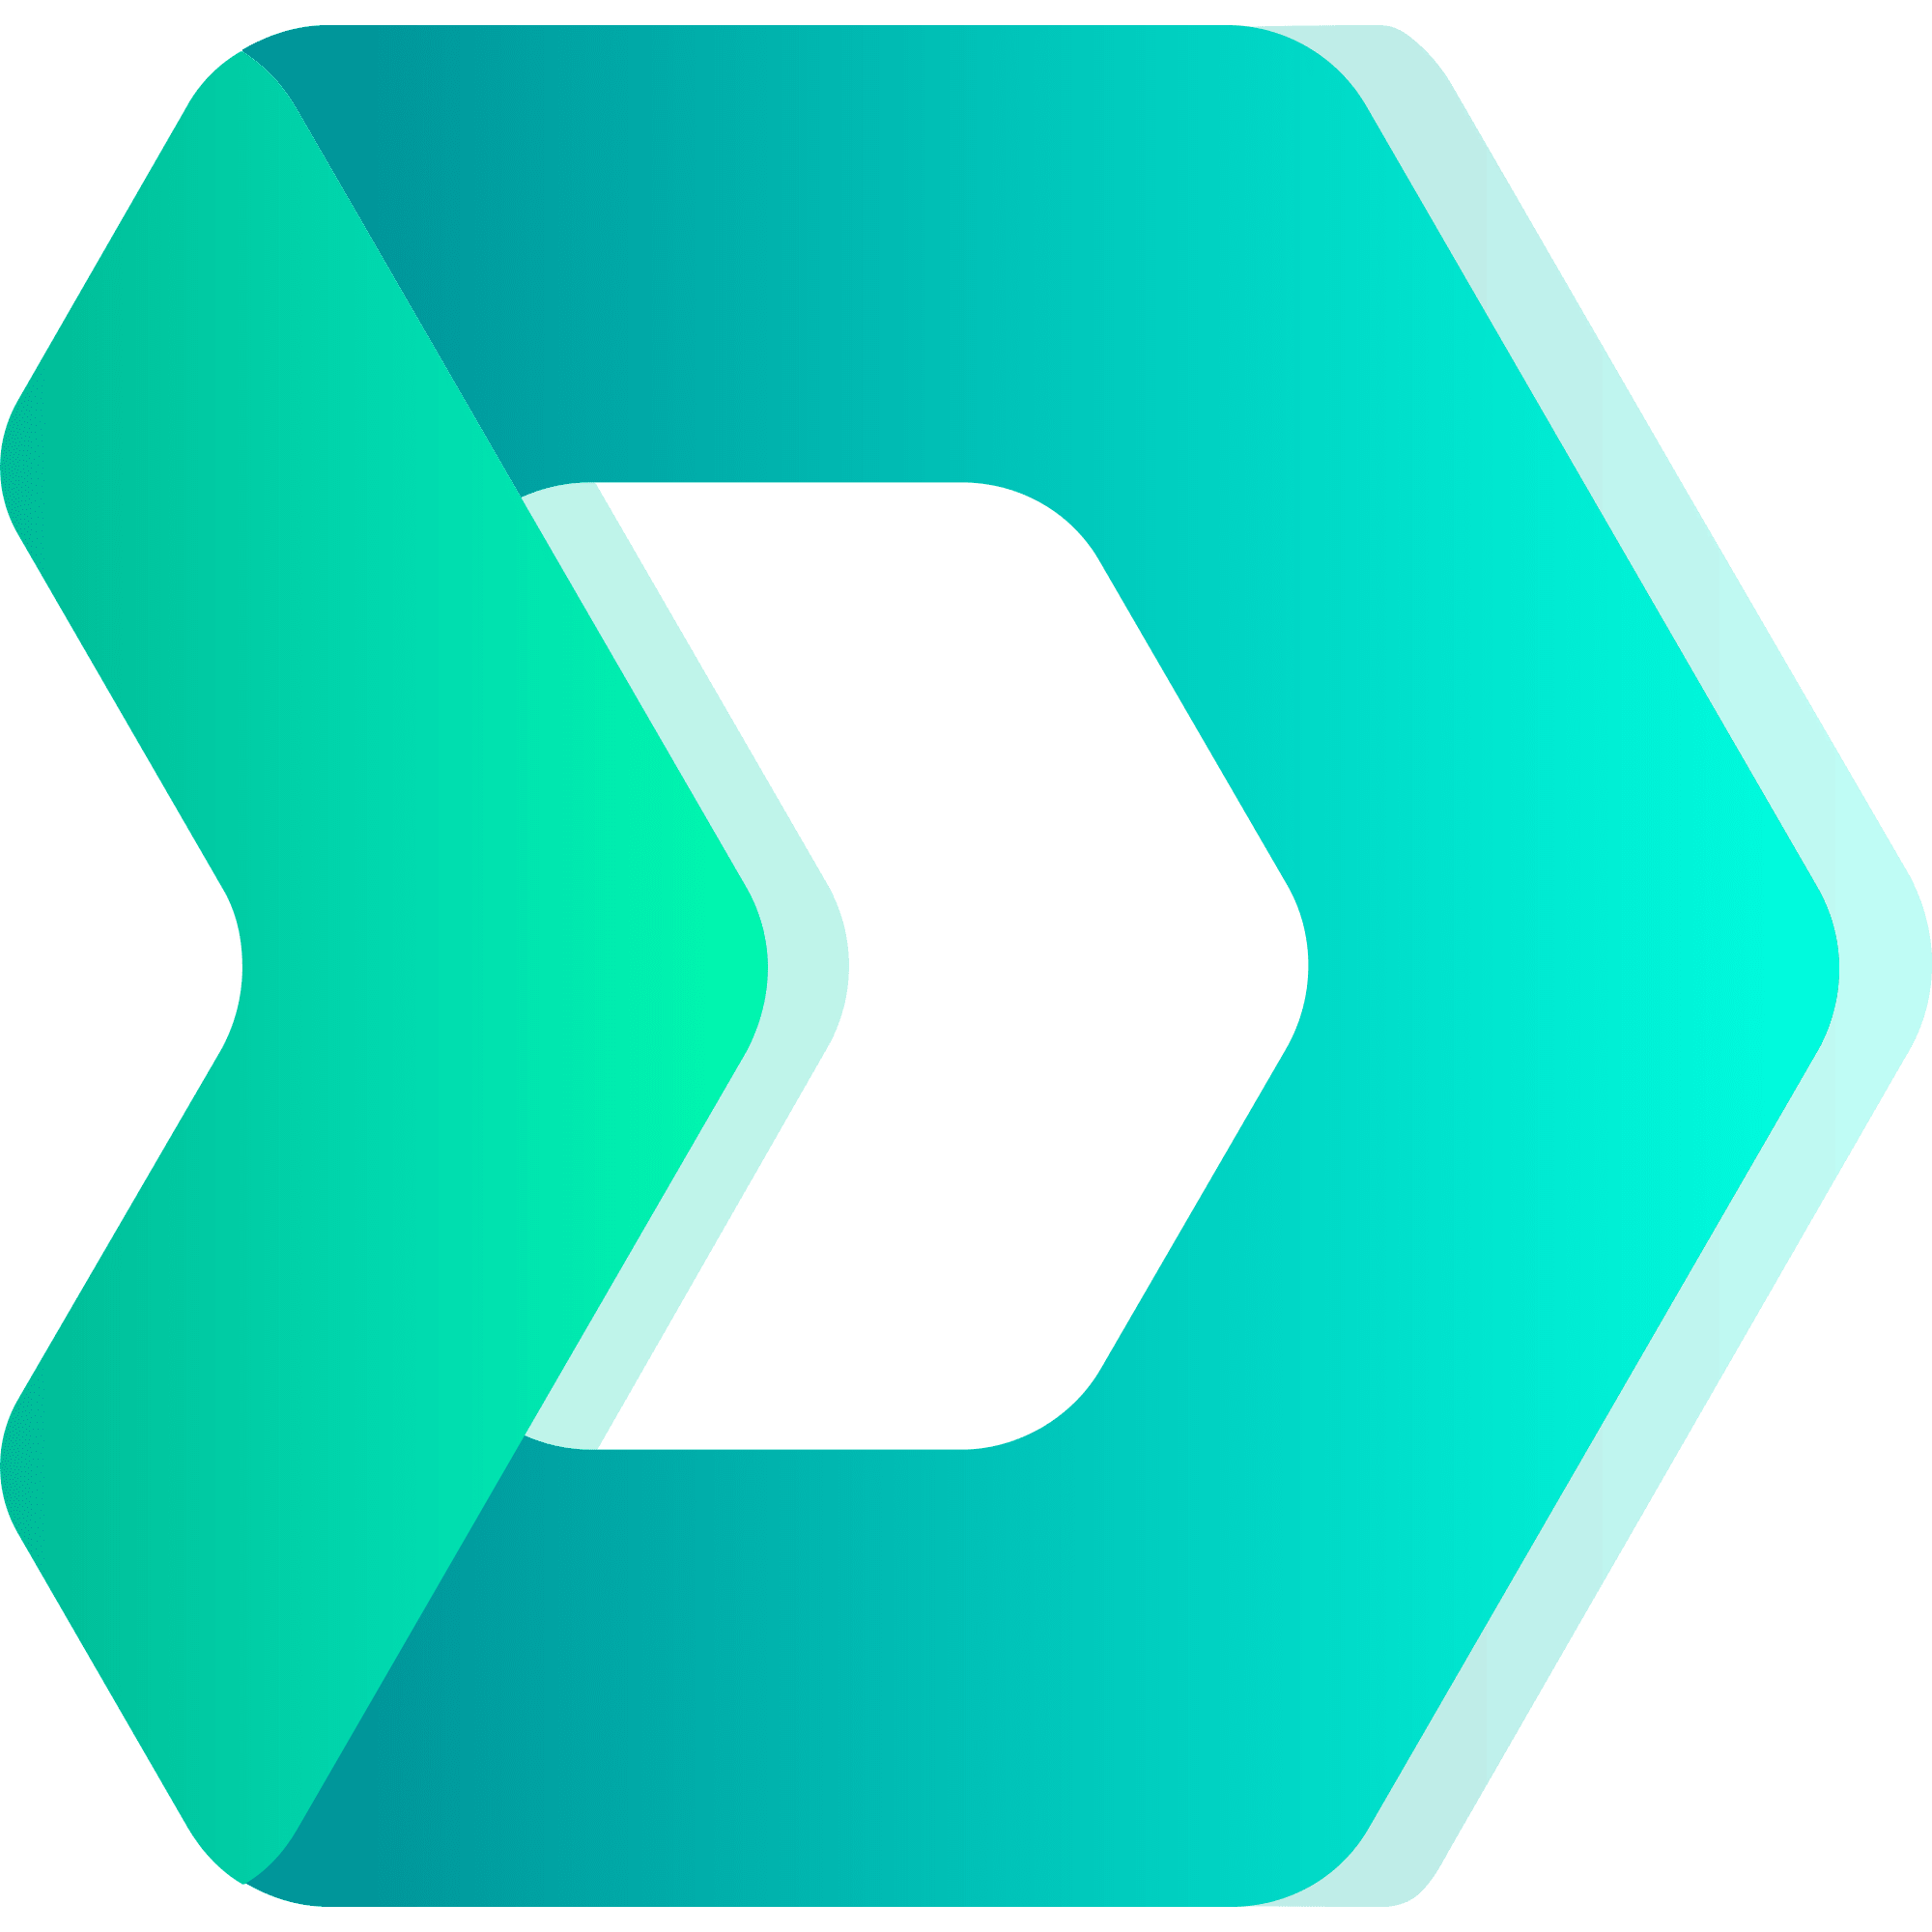 DMarket logo in png format